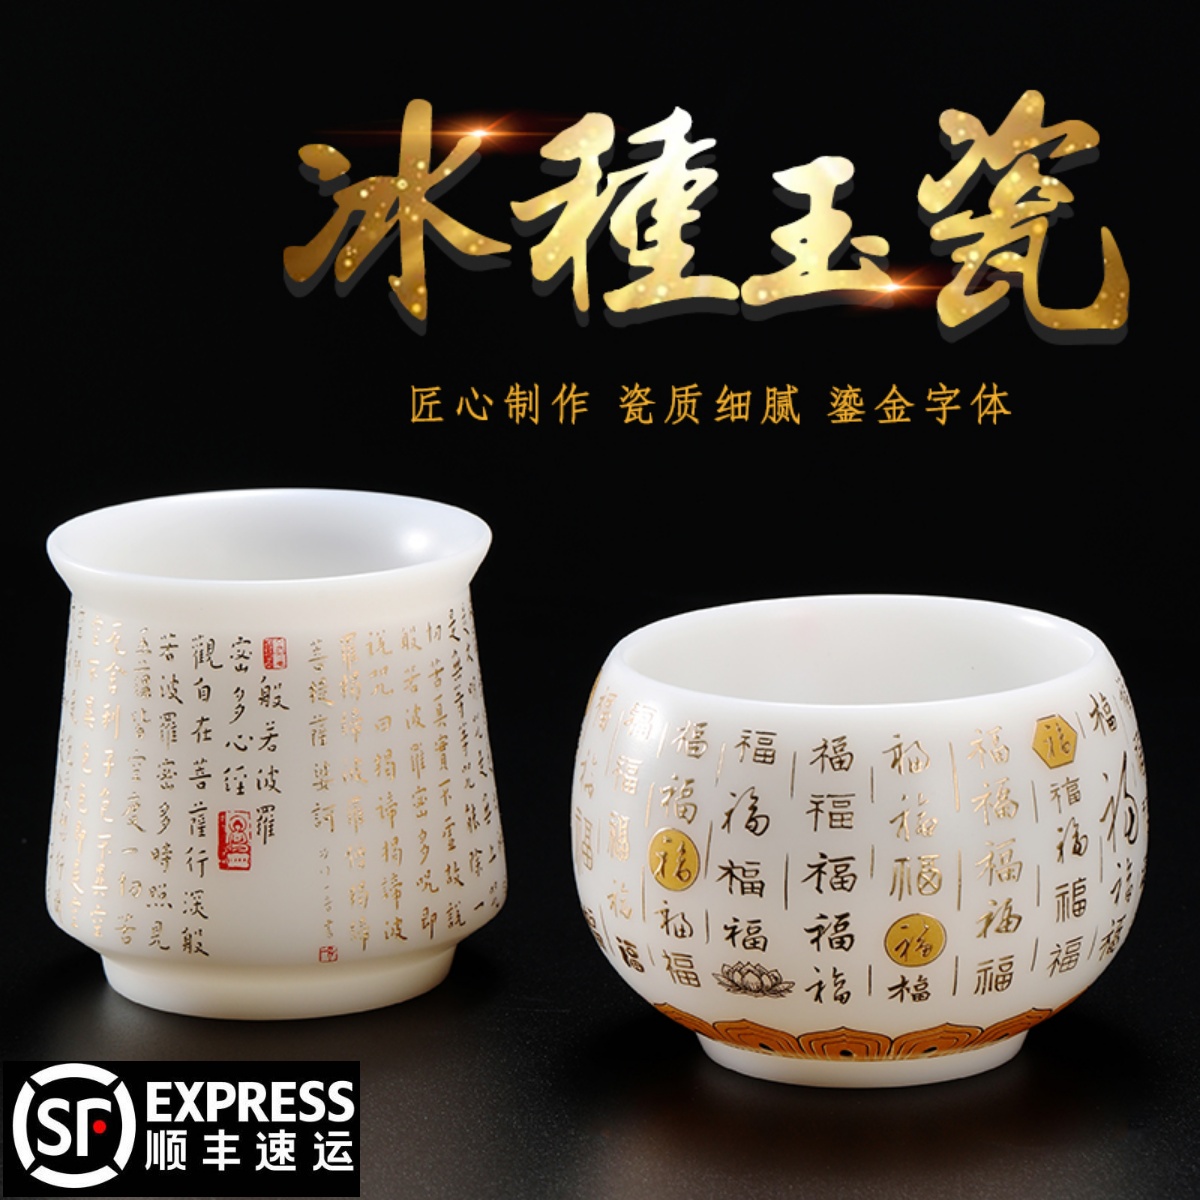 成仙宋代五大名窑品茗杯功夫茶具茶杯陶瓷茶盏个人杯水杯汝窑单杯- Taobao